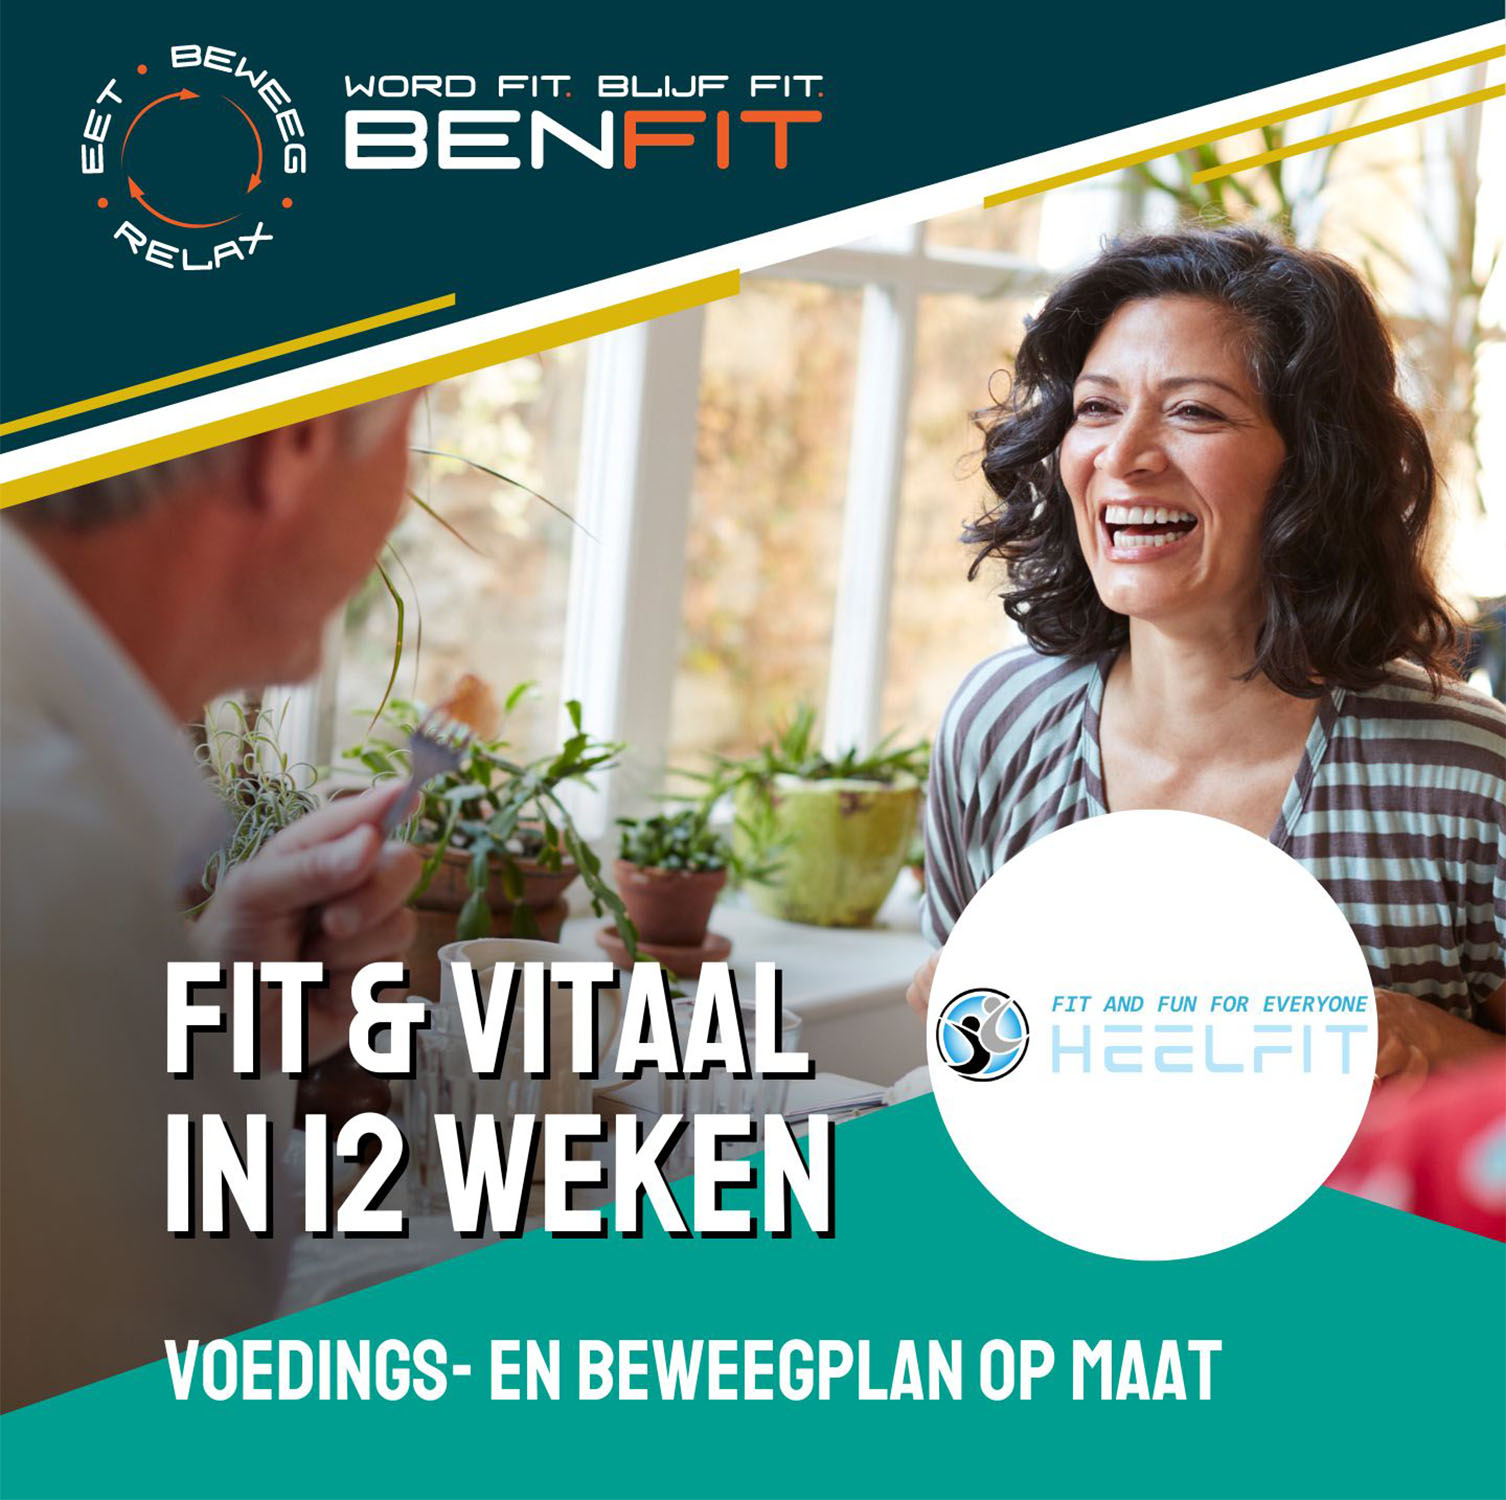 Word Fit & Vitaal in 12 weken bij HeelFit met een voedings- en beweegplan op maat.